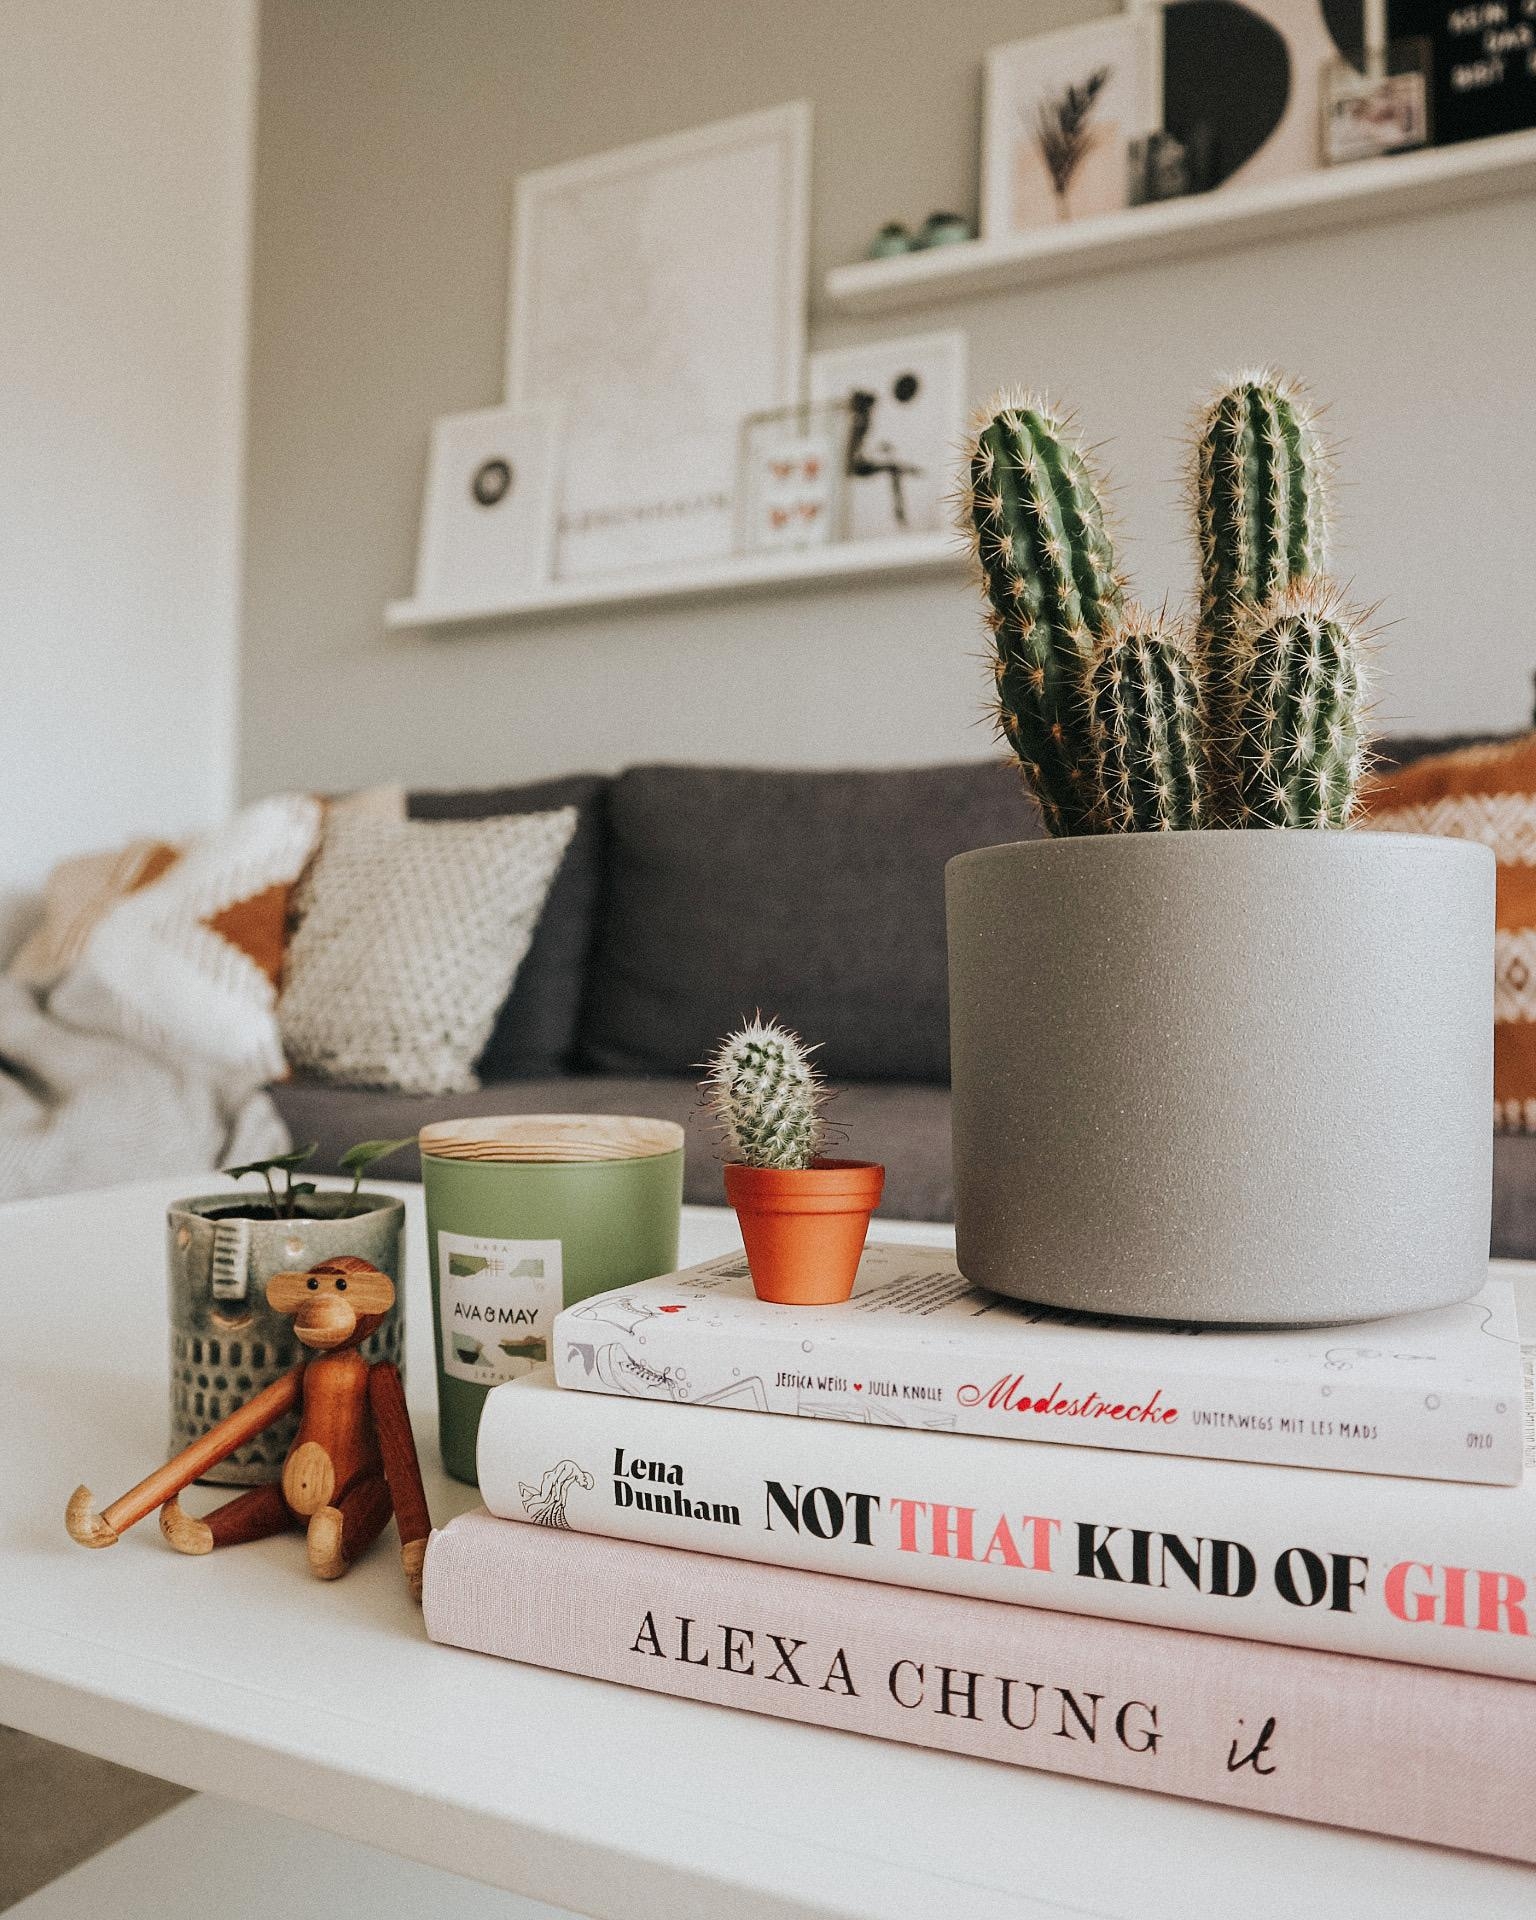 Living Room Details 🌵
#cactus #plantlover #sundays #livingroom #details 